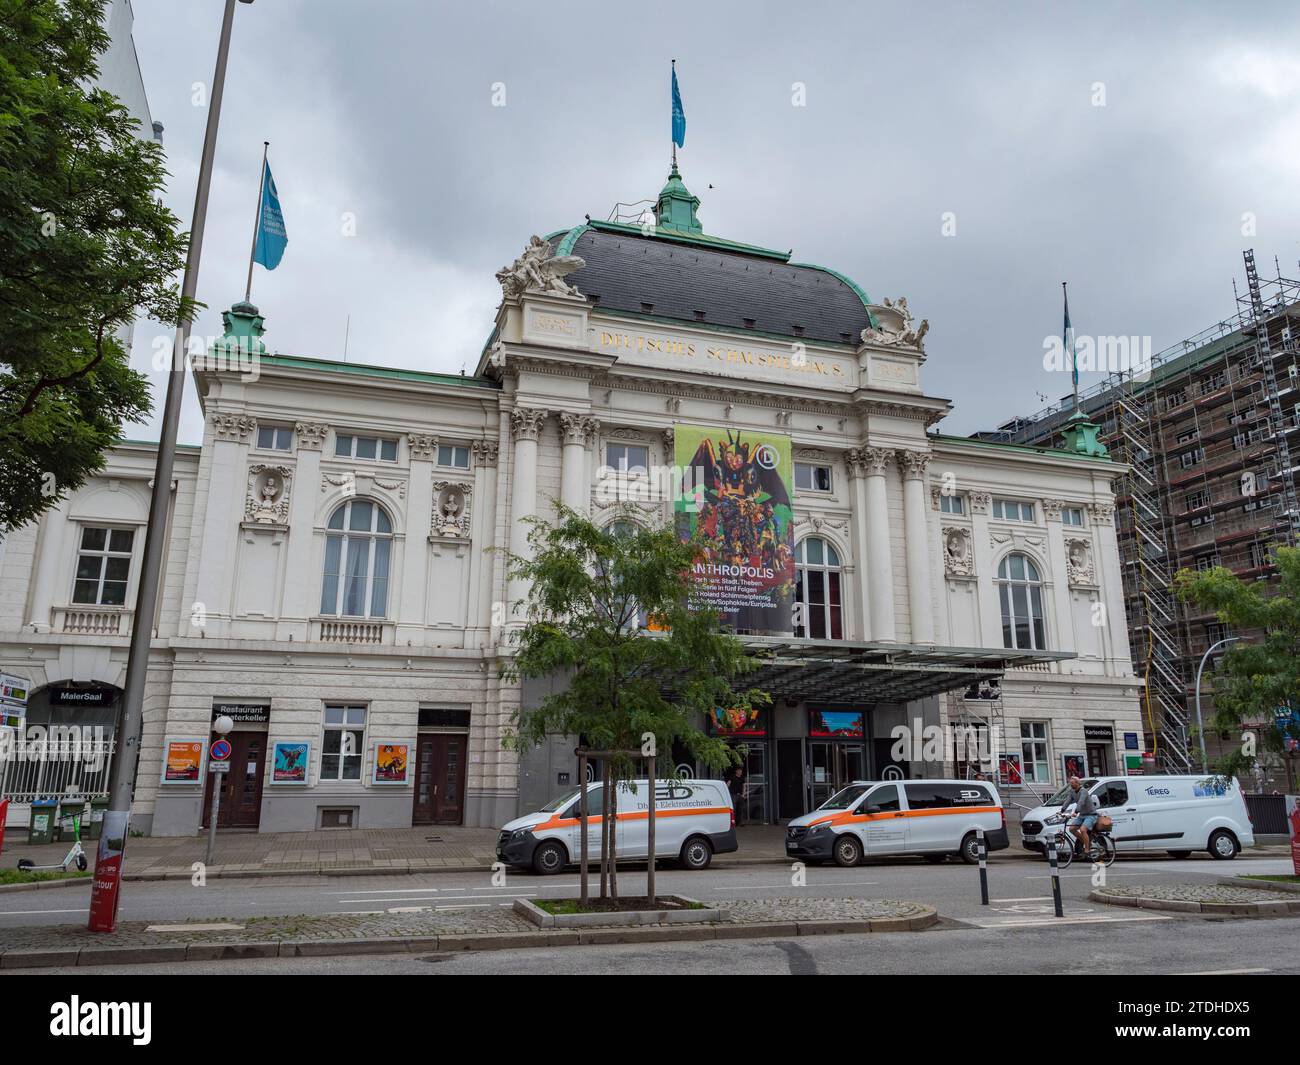 Das Hamburger Schauspielhaus ist ein Theater in der St. Georg Viertel der Stadt Hamburg, Deutschland. Stockfoto